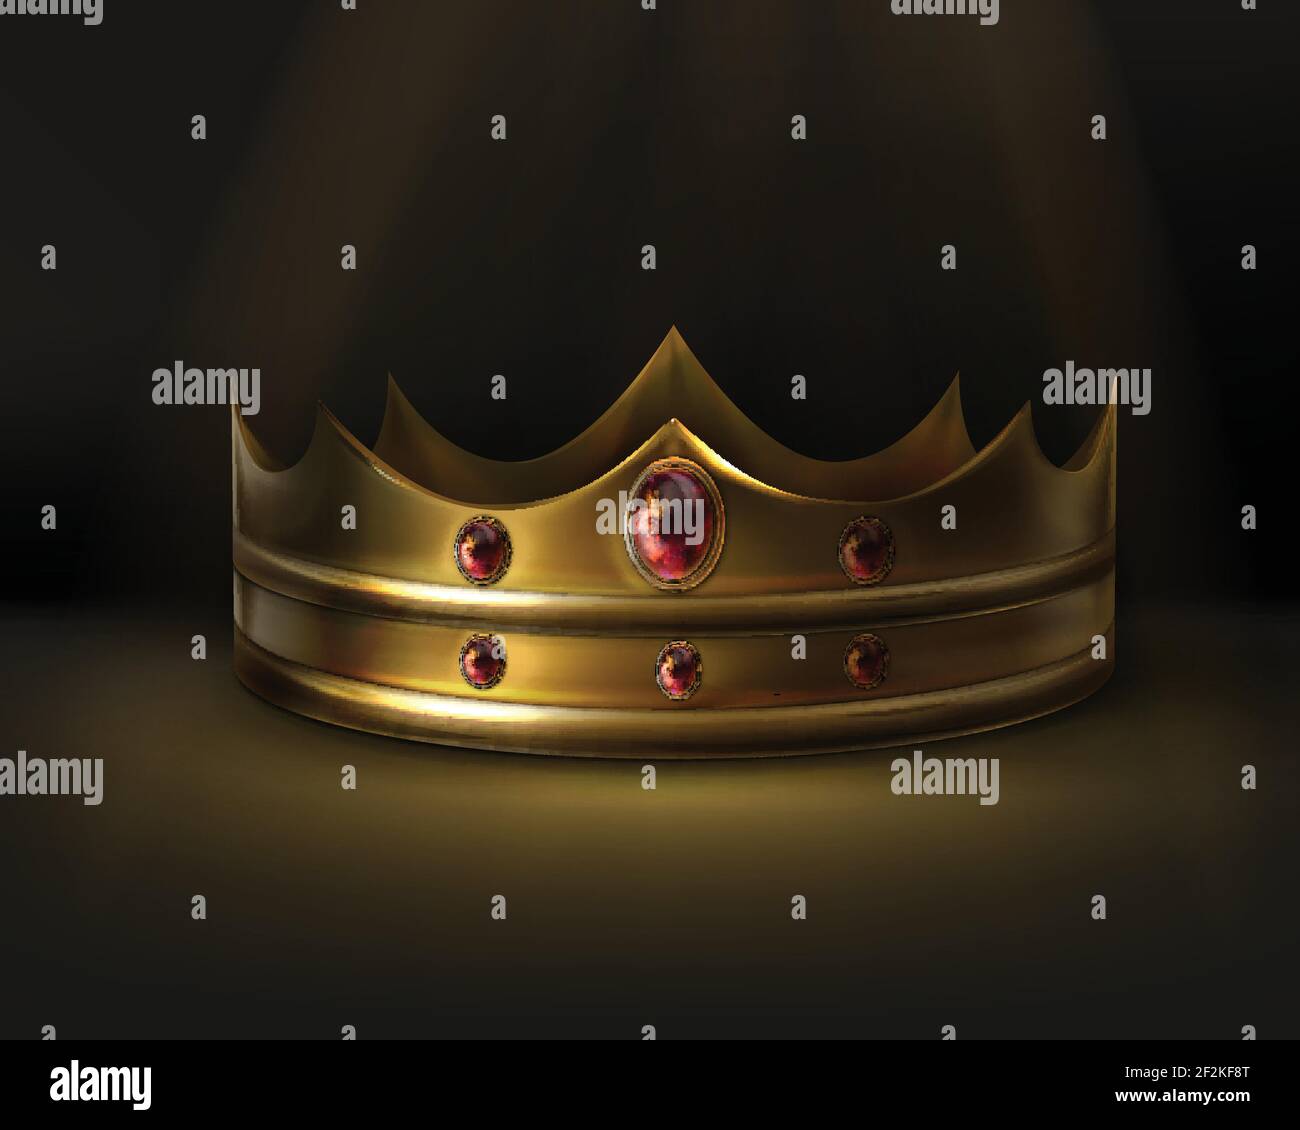 Vektor Royal goldene Krone mit rotem Edelstein isoliert auf dunkel Hintergrund Stock Vektor